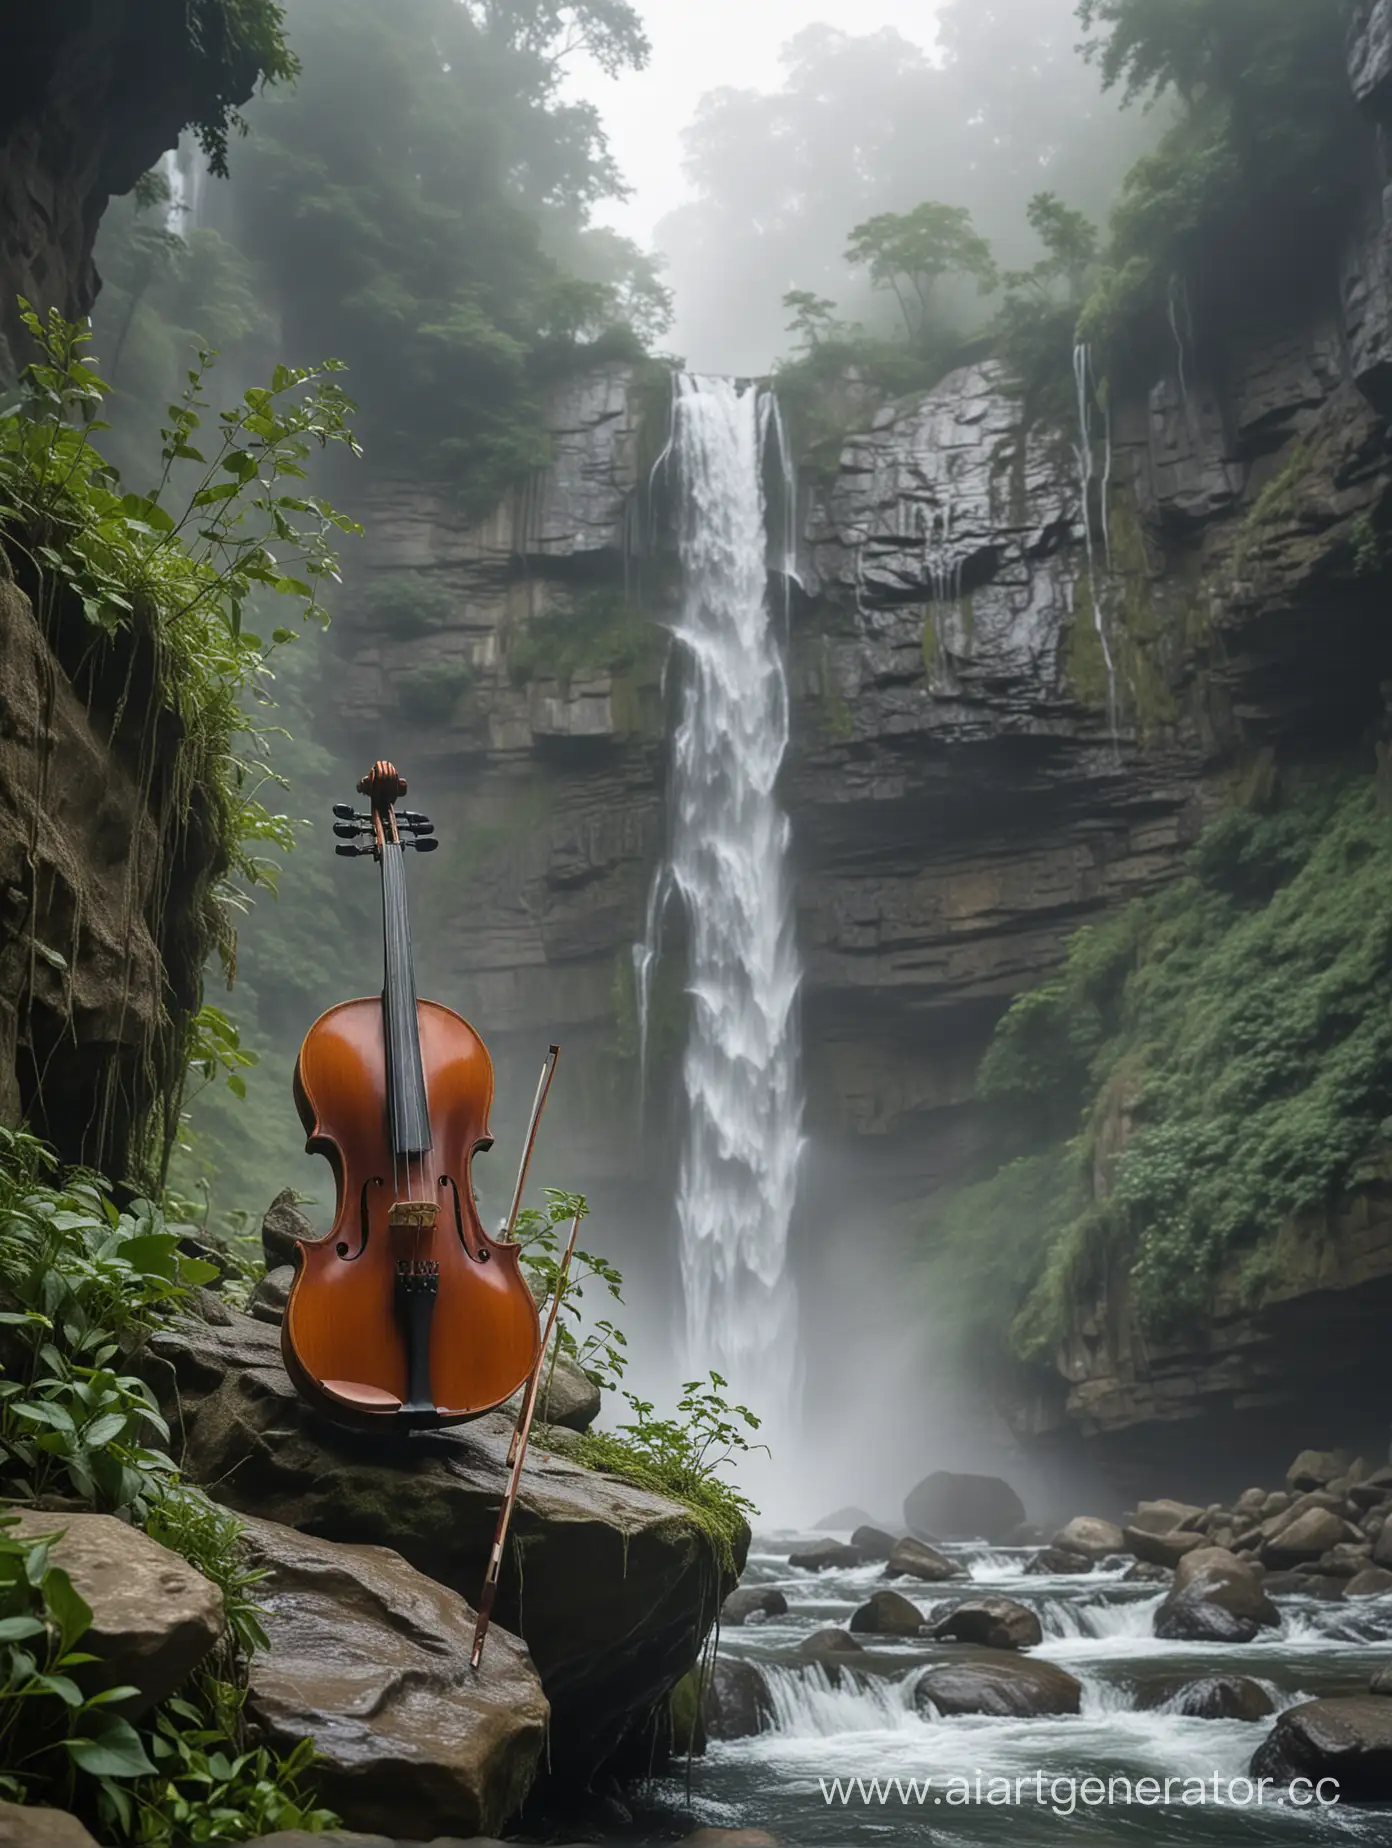 Скрипка в водопаде, поет, в тумане, вокруг камни, зелень и высокий водопад